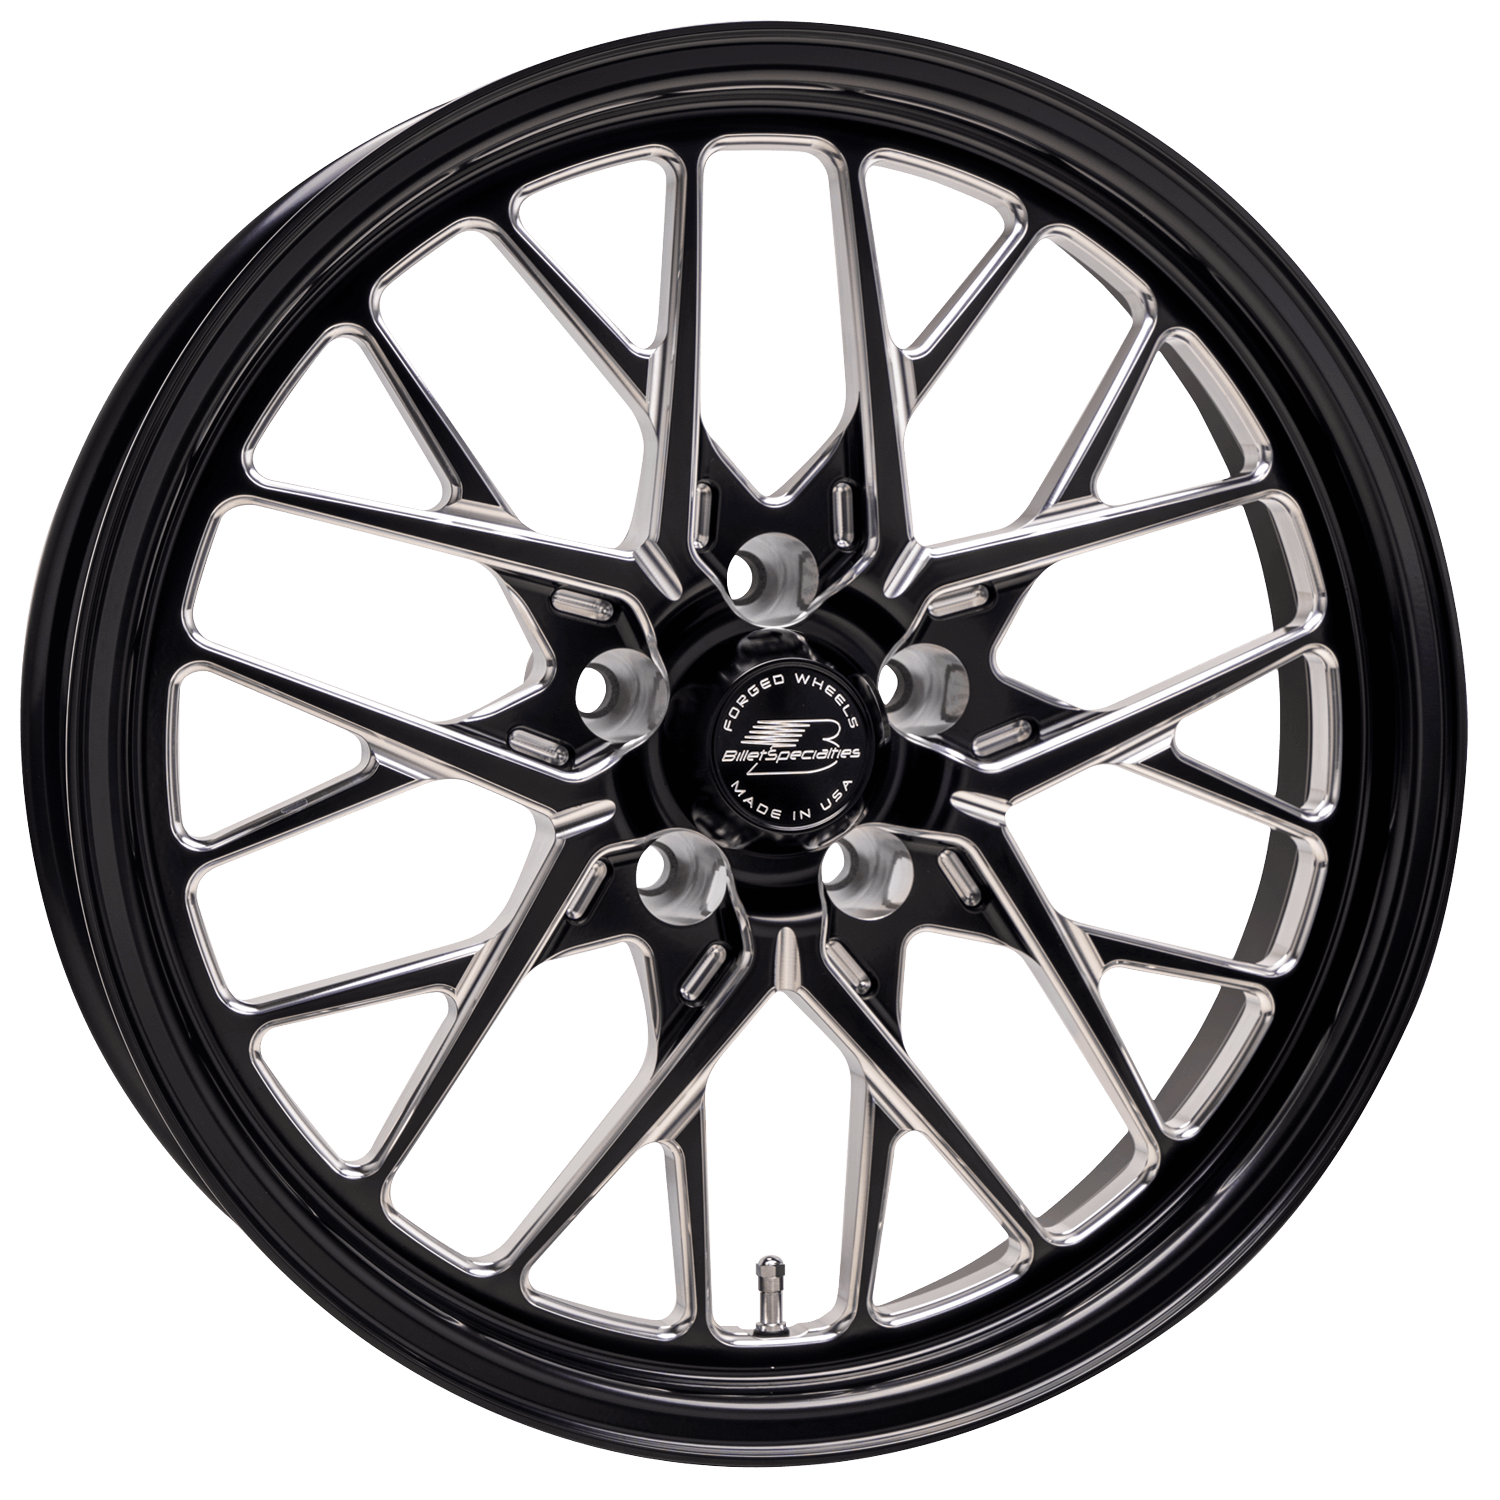 REDLINE Drag Pack Front Wheel, Size: 18" x 5", Bolt Pattern: 5 x 115 mm, Offset: 90 mm [Black]